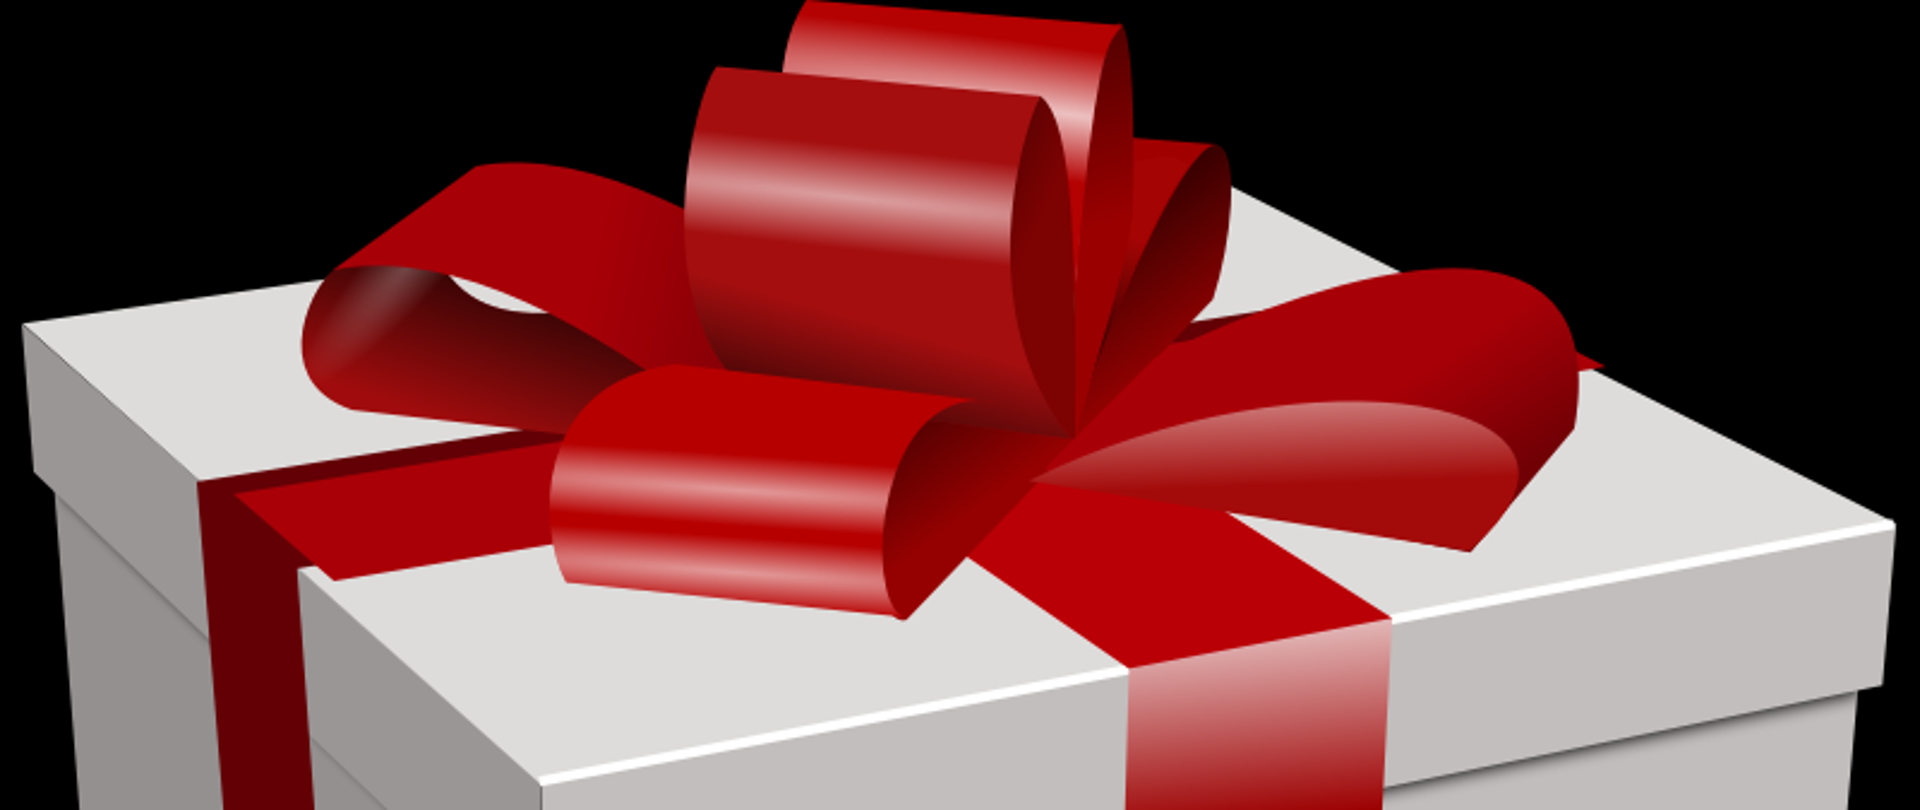 Zdjęcie przedstawia pudełko prezentowe obwiązane czerwoną wstążką.